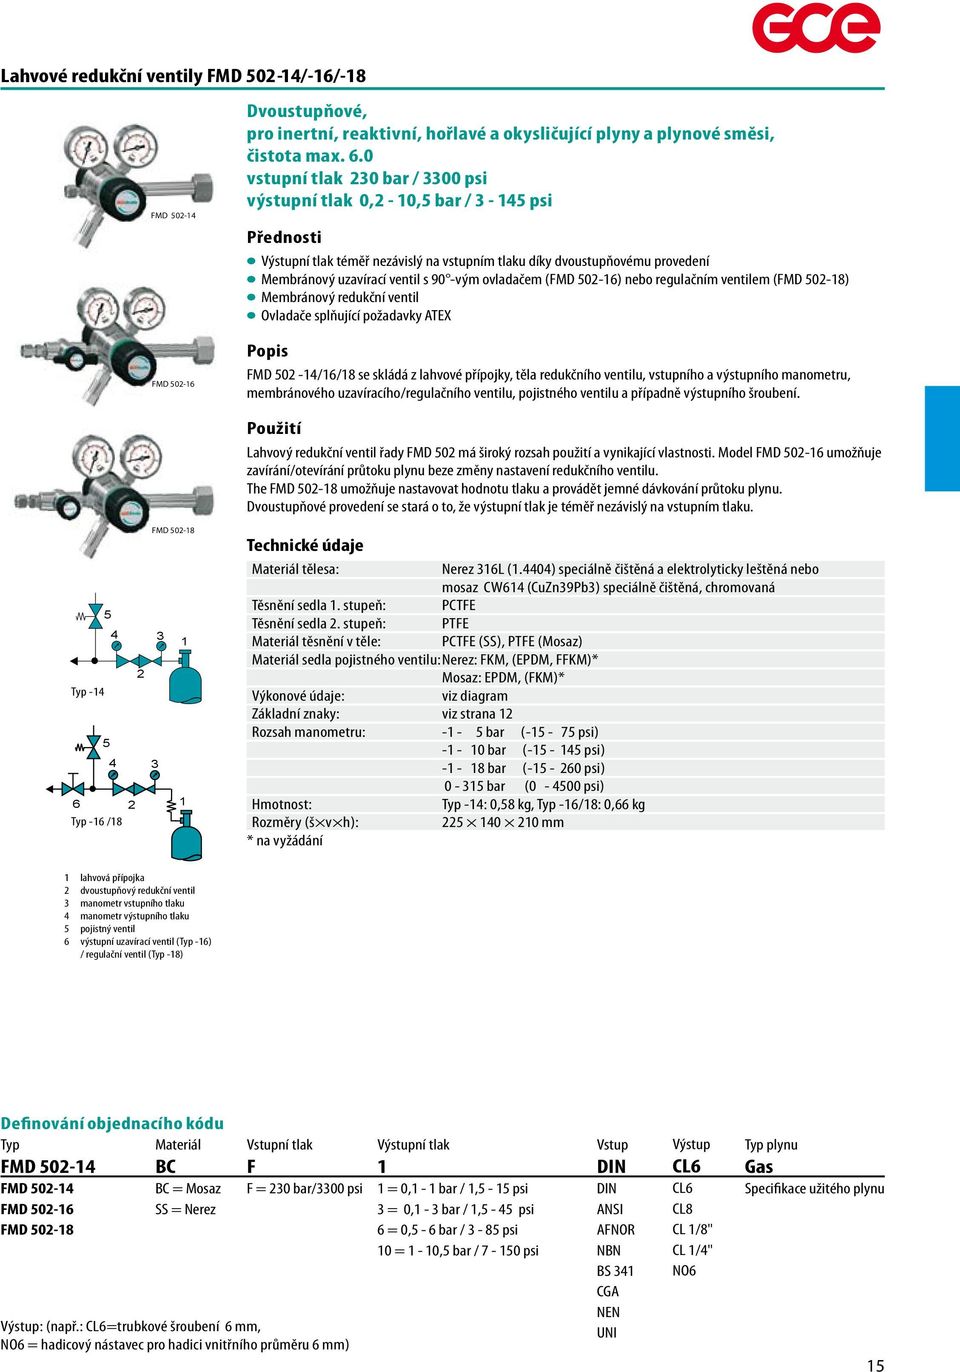 regulačním ventilem (FMD 5-8) Membránový redukční ventil Ovladače splňující požadavky ATEX FMD 5-4/6/8 se skládá z lahvové přípojky, těla redukčního ventilu, ního a výstupního manometru, membránového